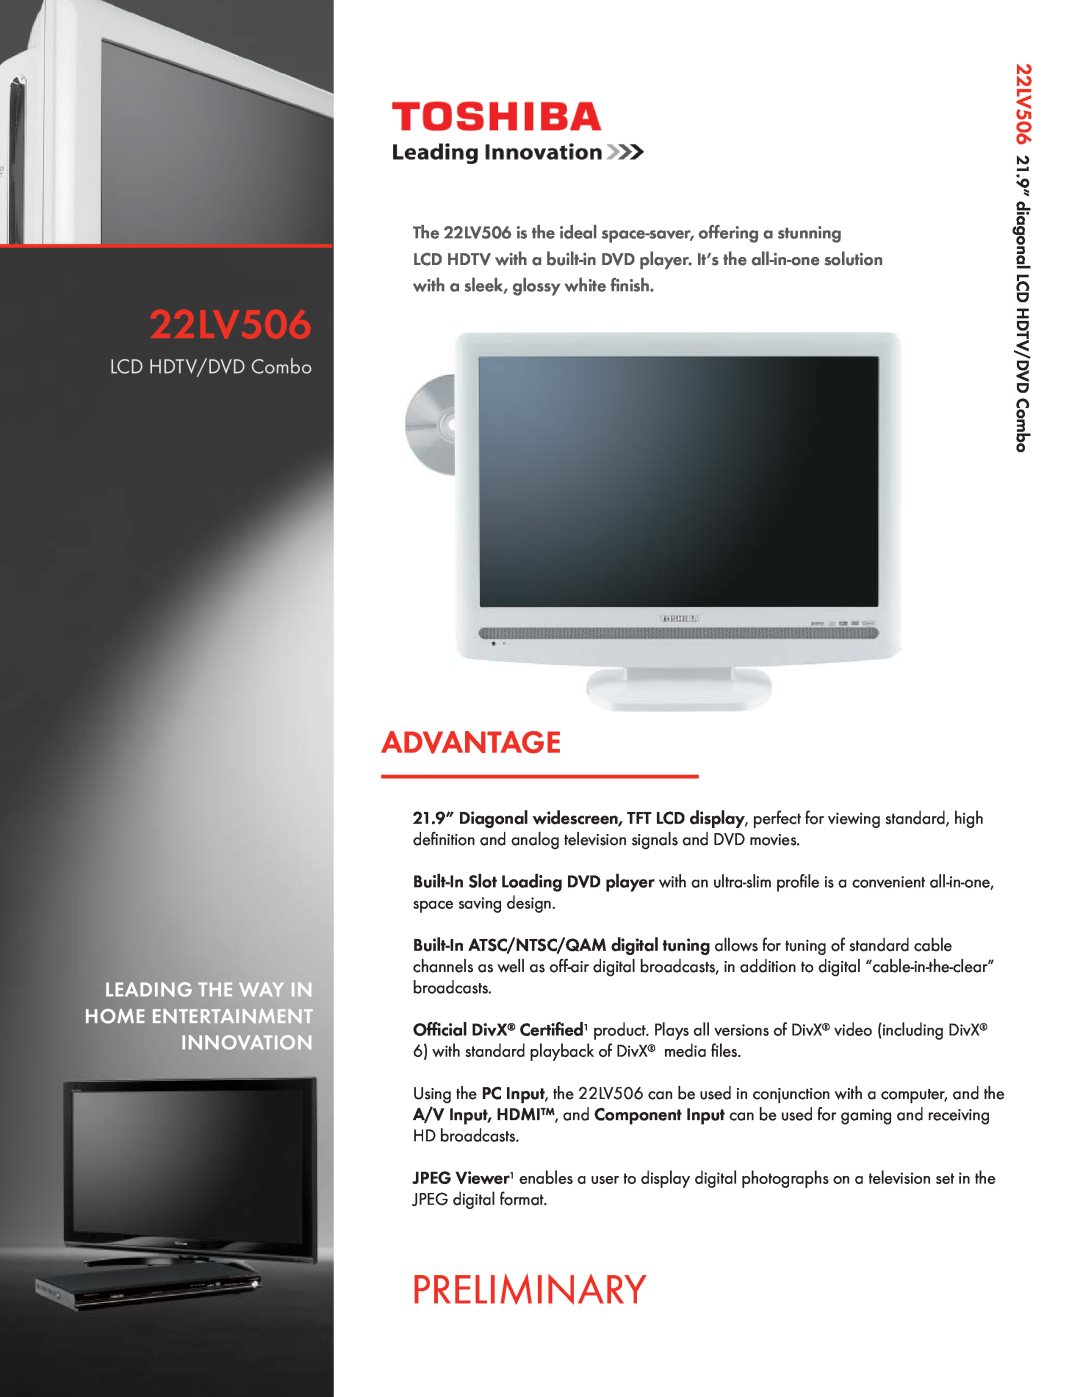 Toshiba manual Preliminary, Advantage, LCD HDTV/DVD Combo, 22LV506 21.9”, with a sleek, glossy white ﬁnish 